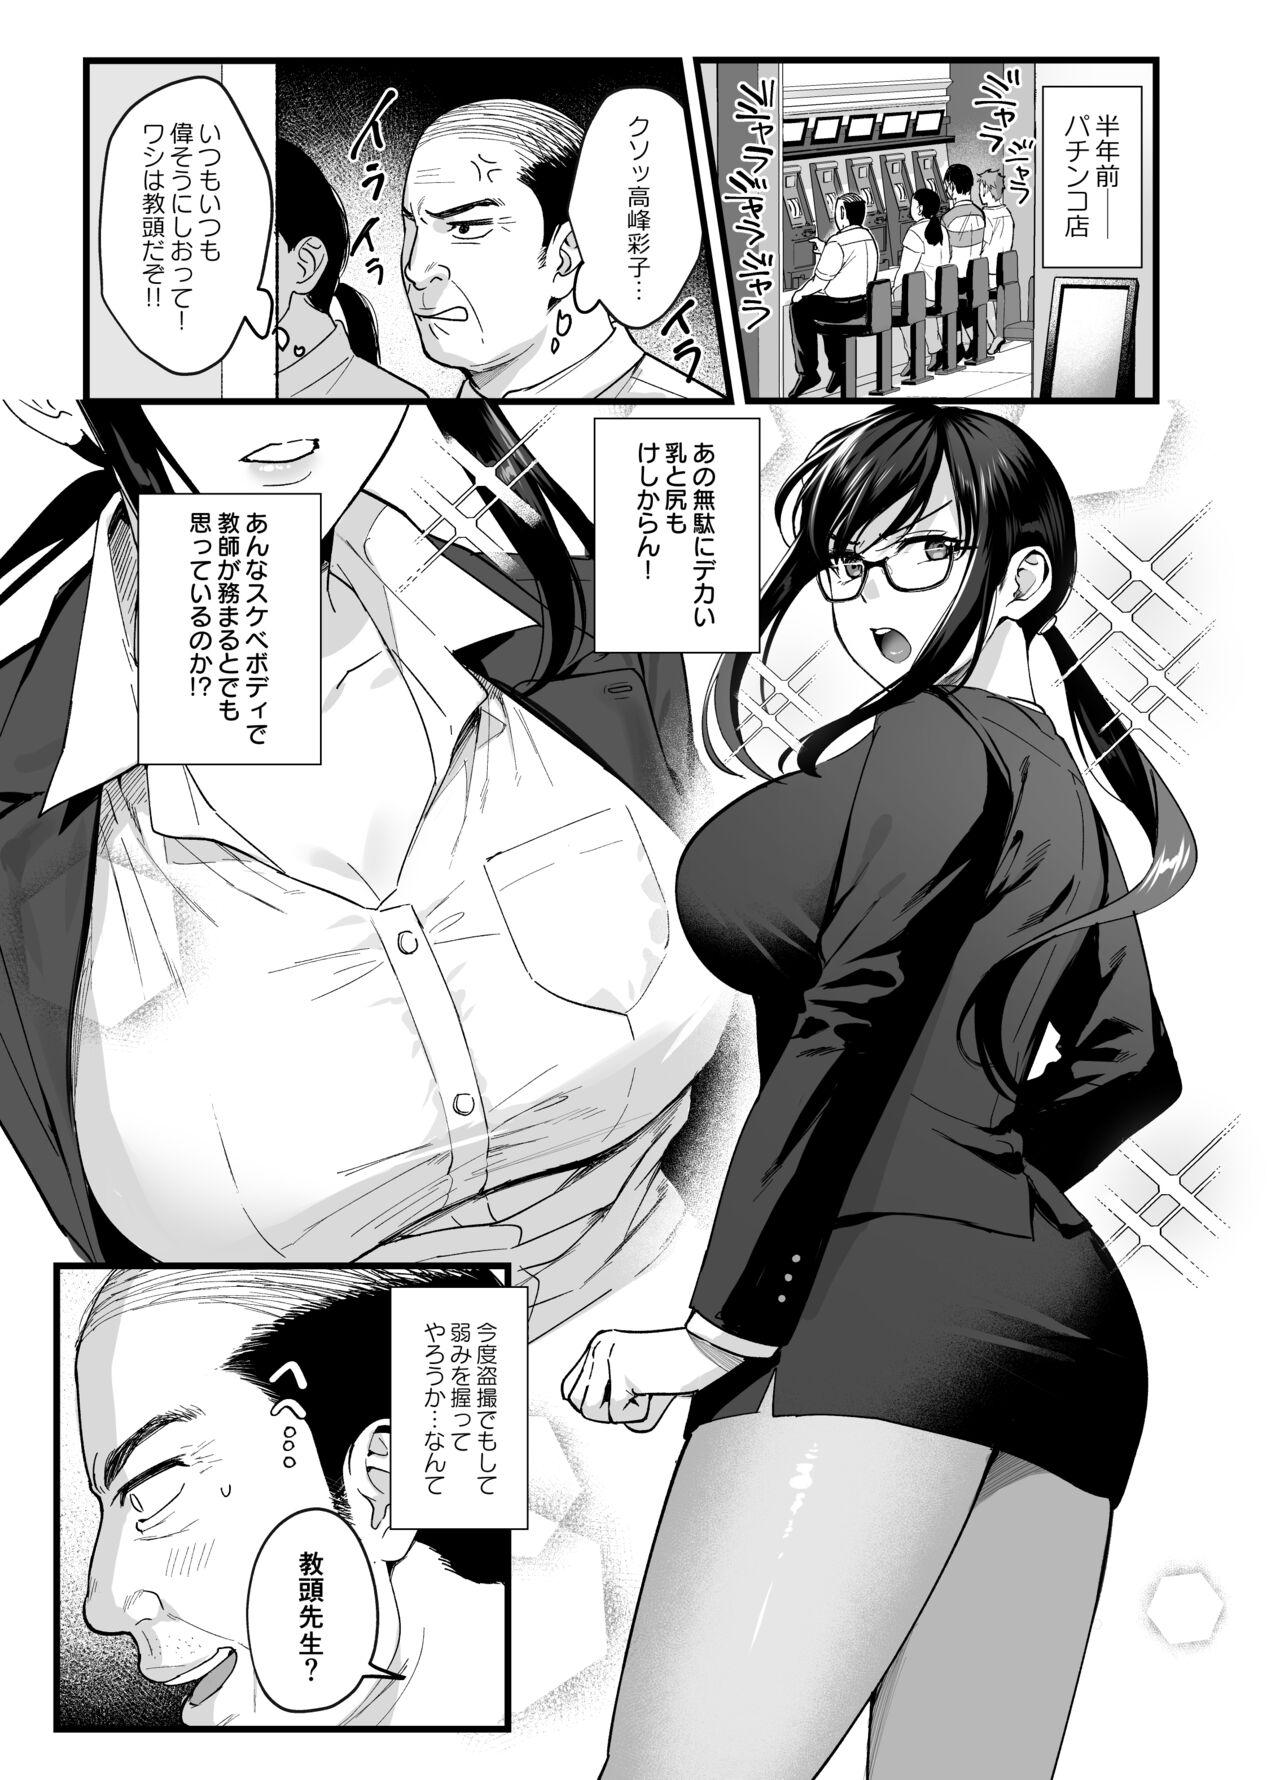 Perverted Toshoshitsu no Kanojo 6 - Original Sluts - Picture 2